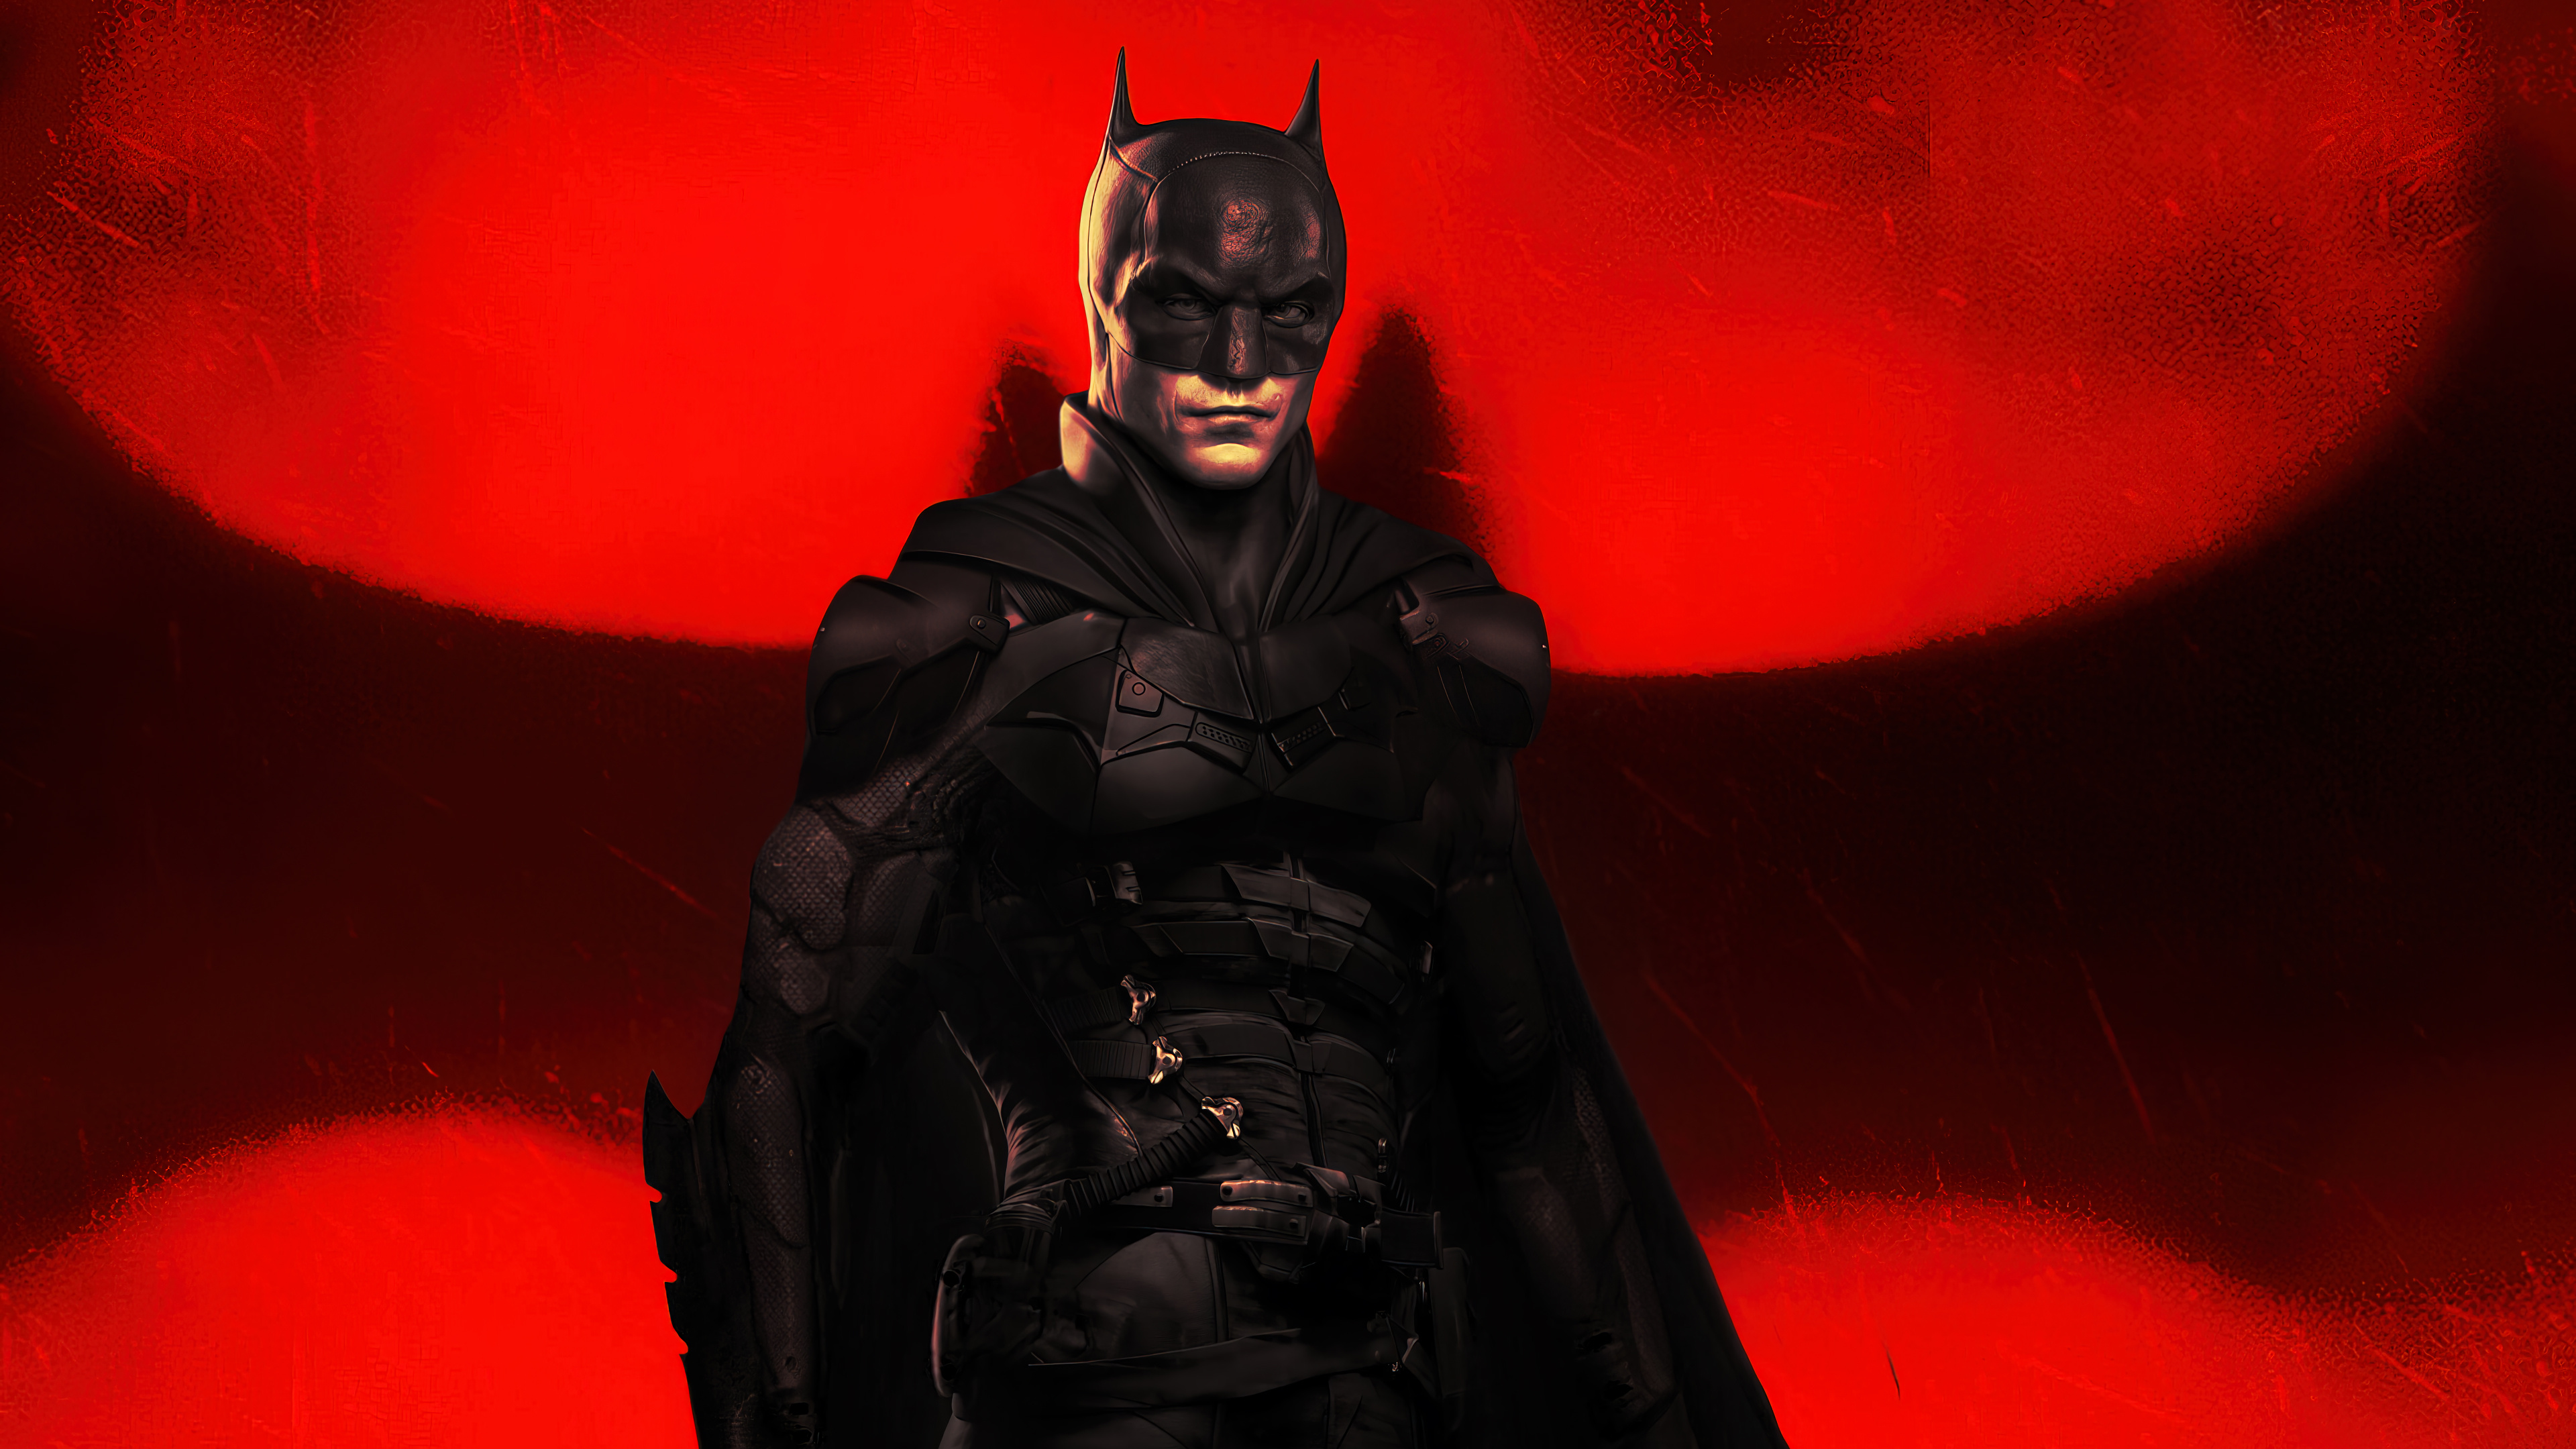 The Batman Movie 2022 PC DeskK Wallpaper free Download